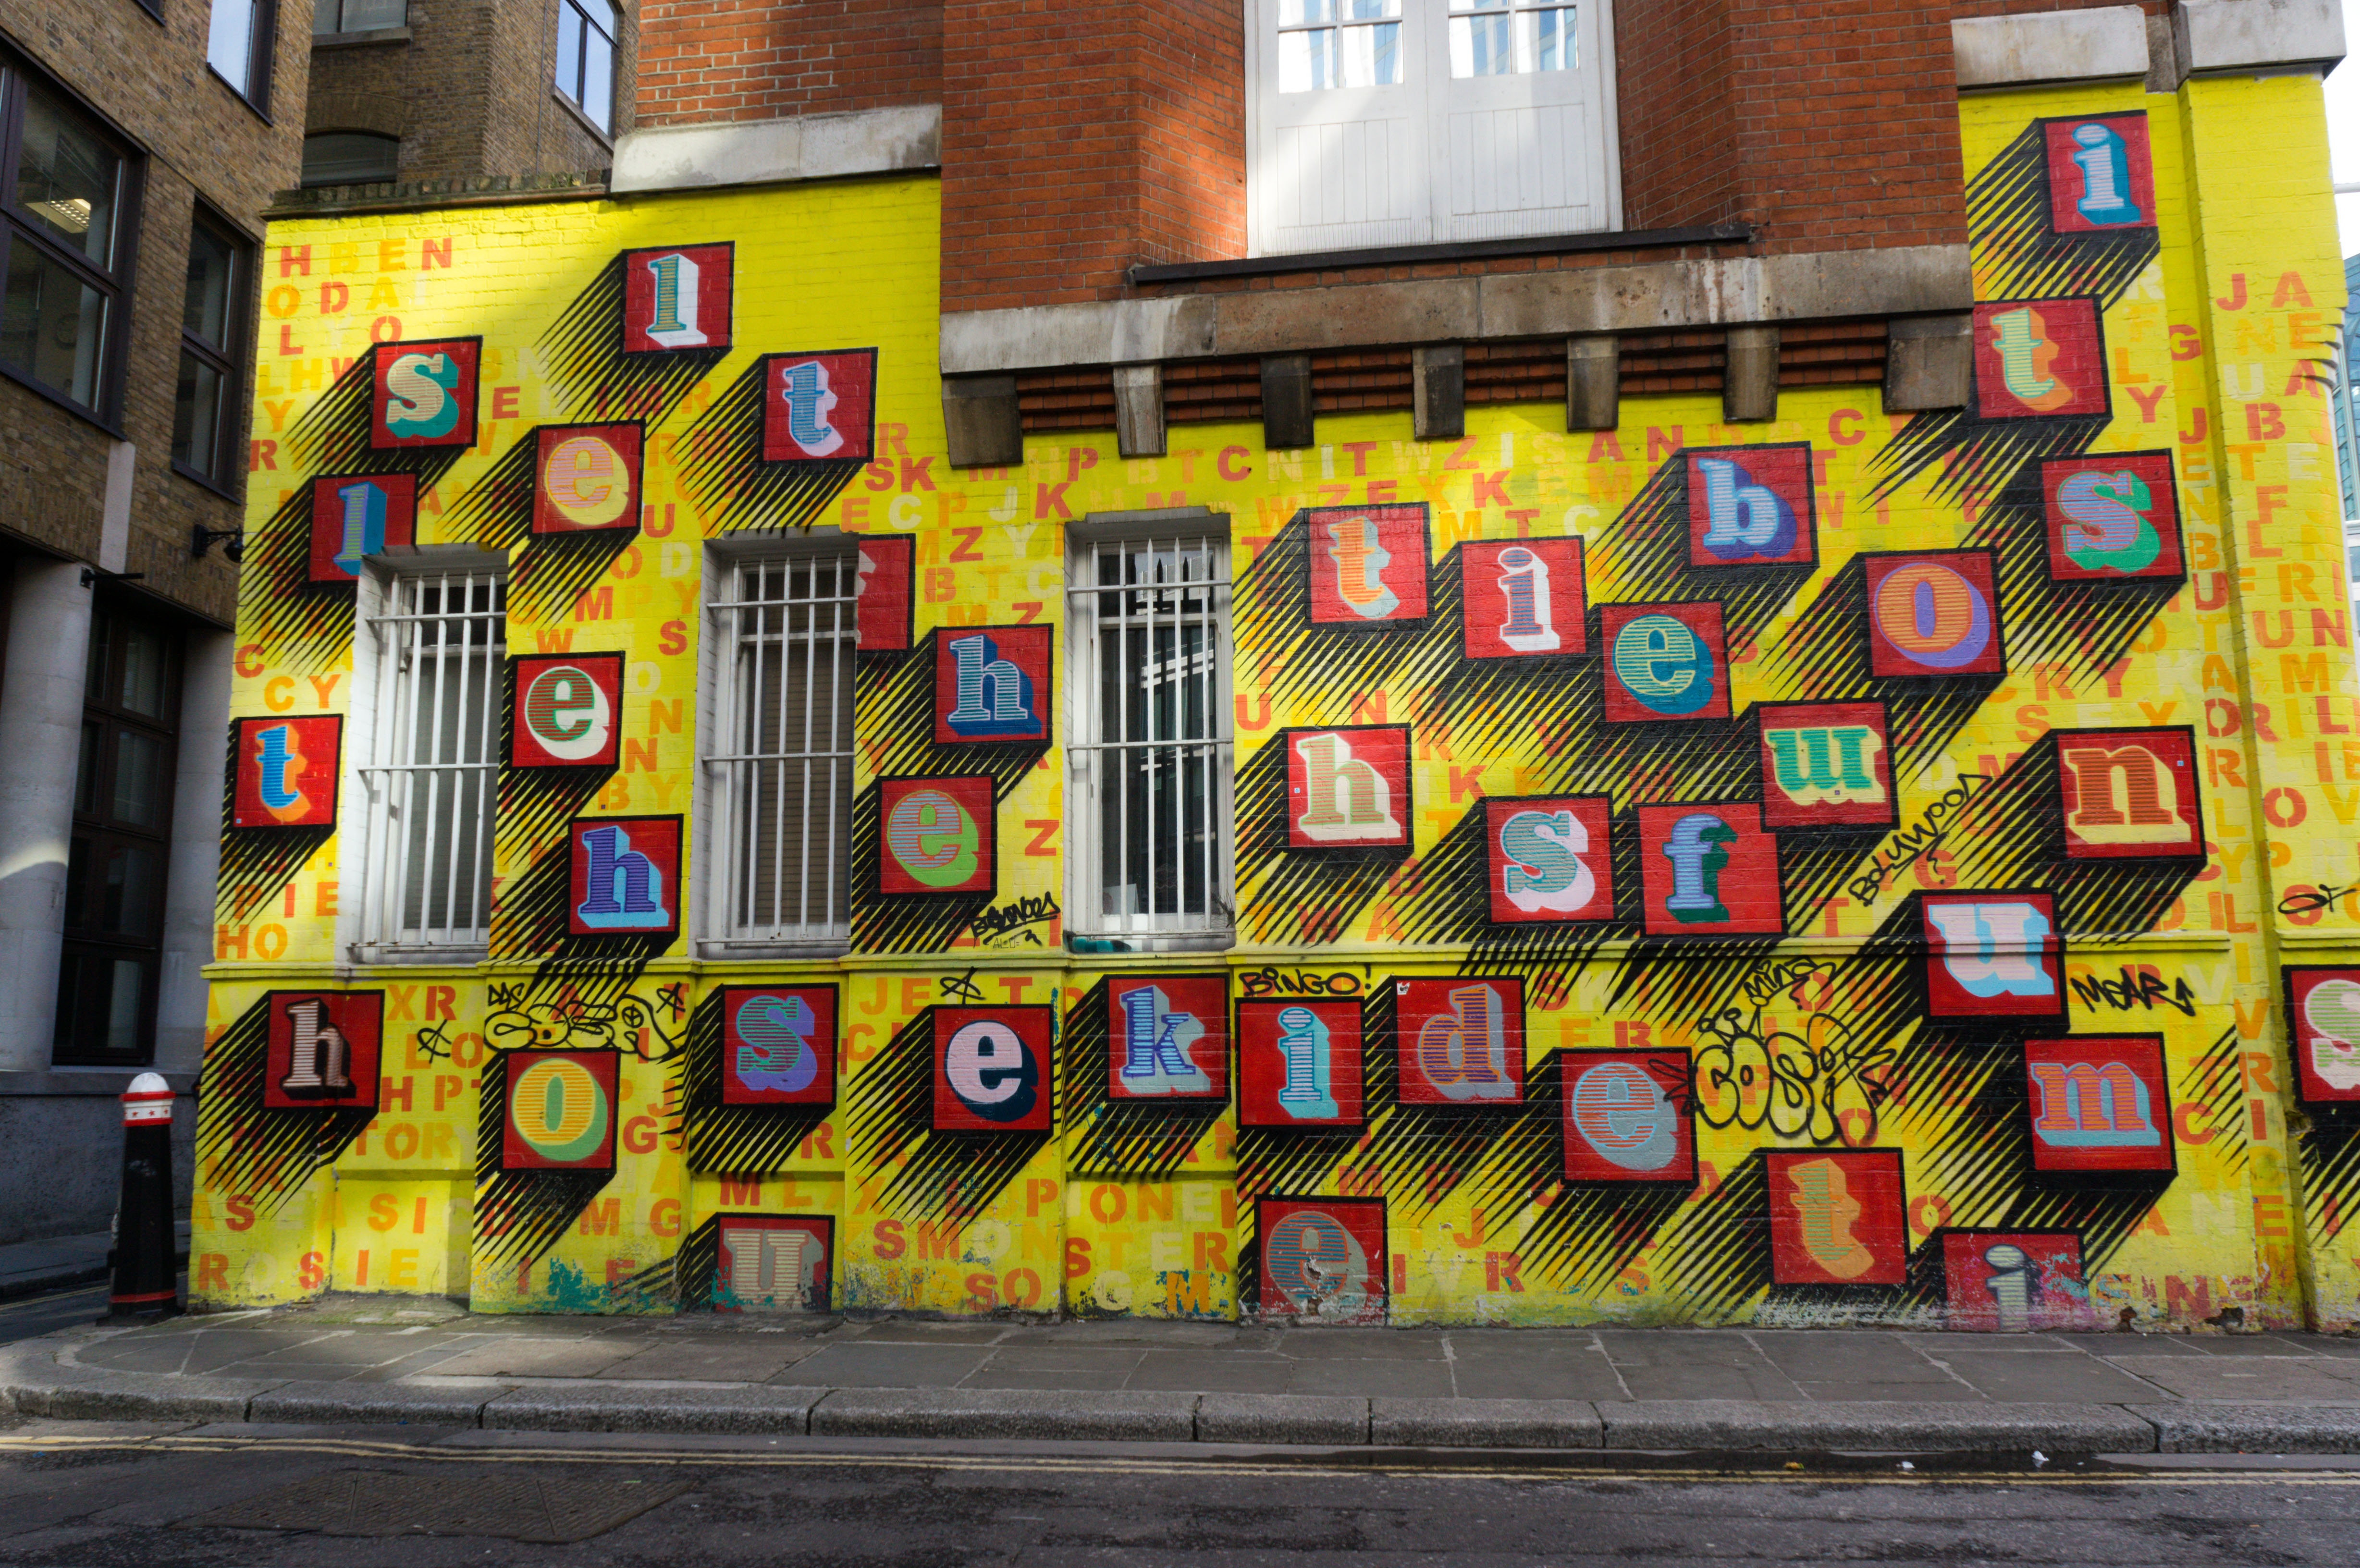 An art work by Ben Eine in Middlesex Street, London.